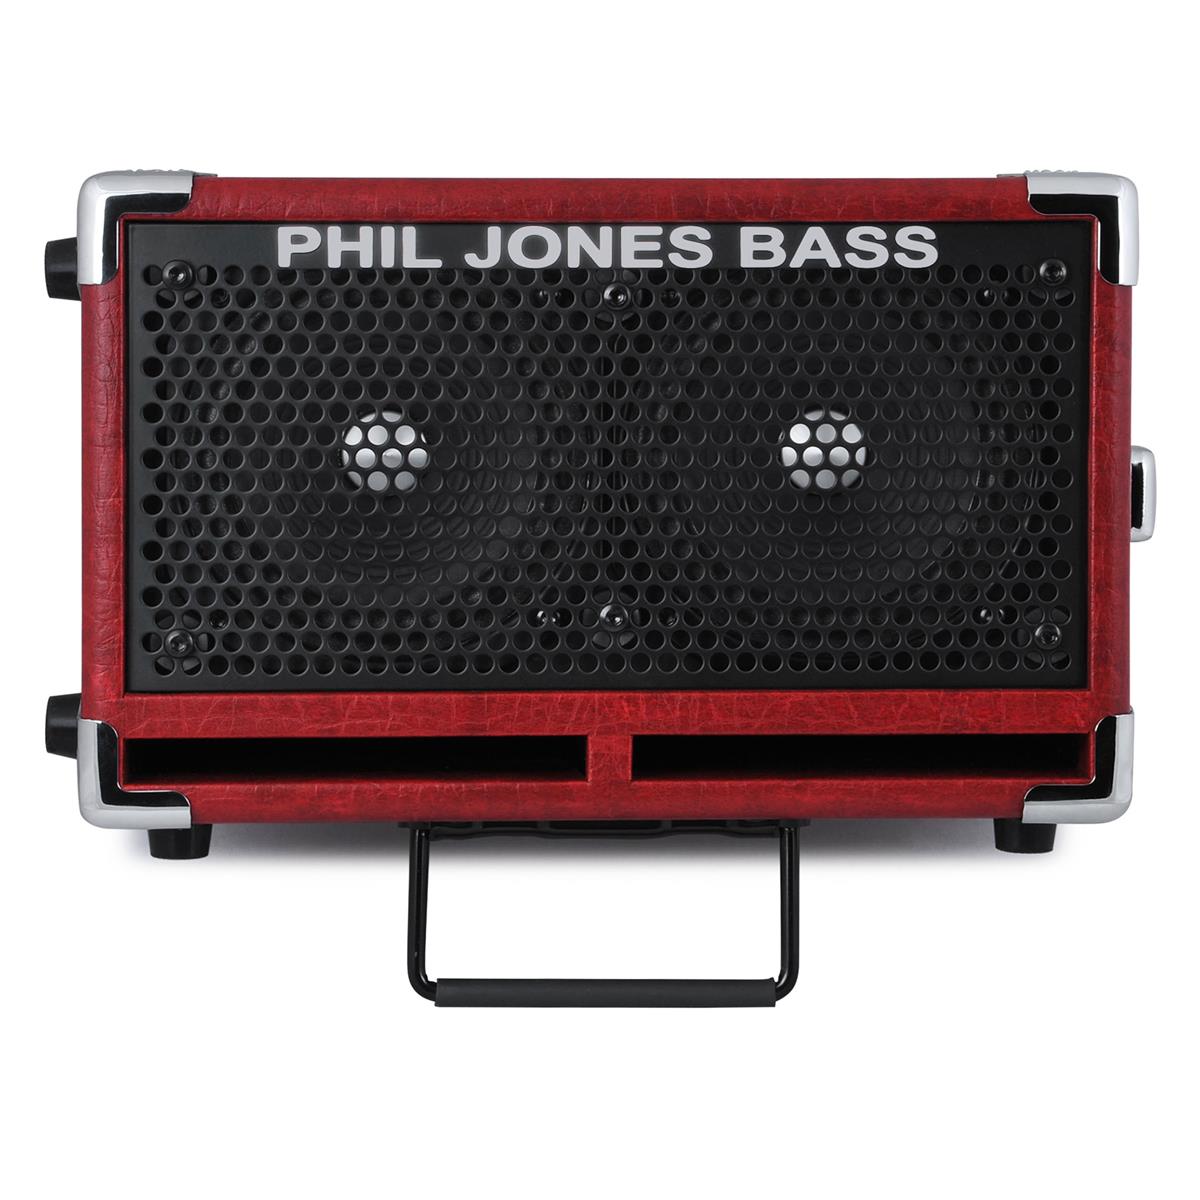 Phil Jones Bass BG-110 Bass Cub II Bass Amplifier, Red -  BG-110 R